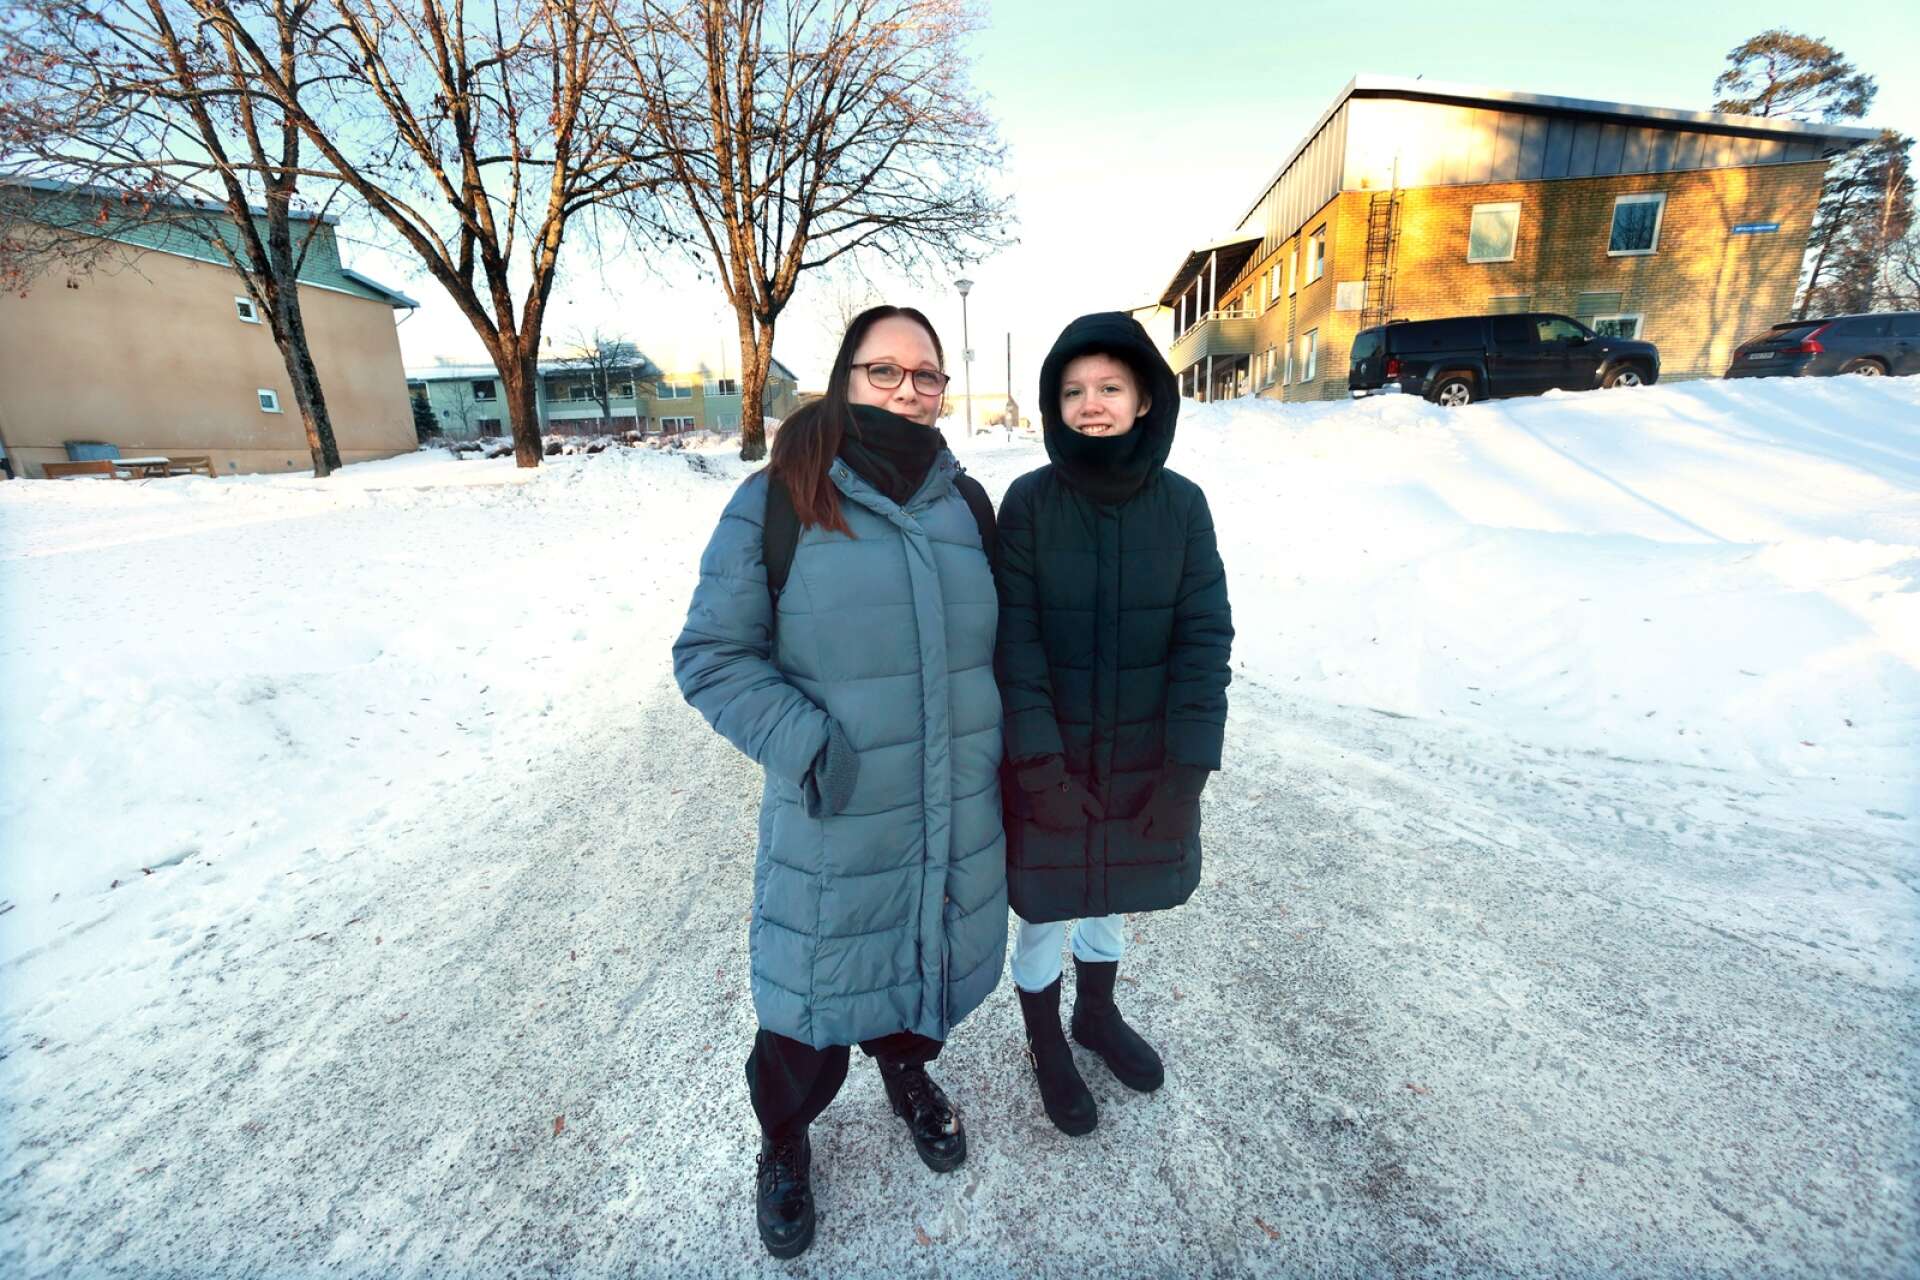 Victoria Vicsanthe och dottern Savanna Vestberg bor på Kronoparken, där klimatutsläppen är lägst i hela Karlstads kommun – bara drygt hälften mot området där de är som högst. ”När man diskuterar vad man ska göra åt det är det bra att titta på var problemen ligger och varför”, säger Victoria Vicsanthe.